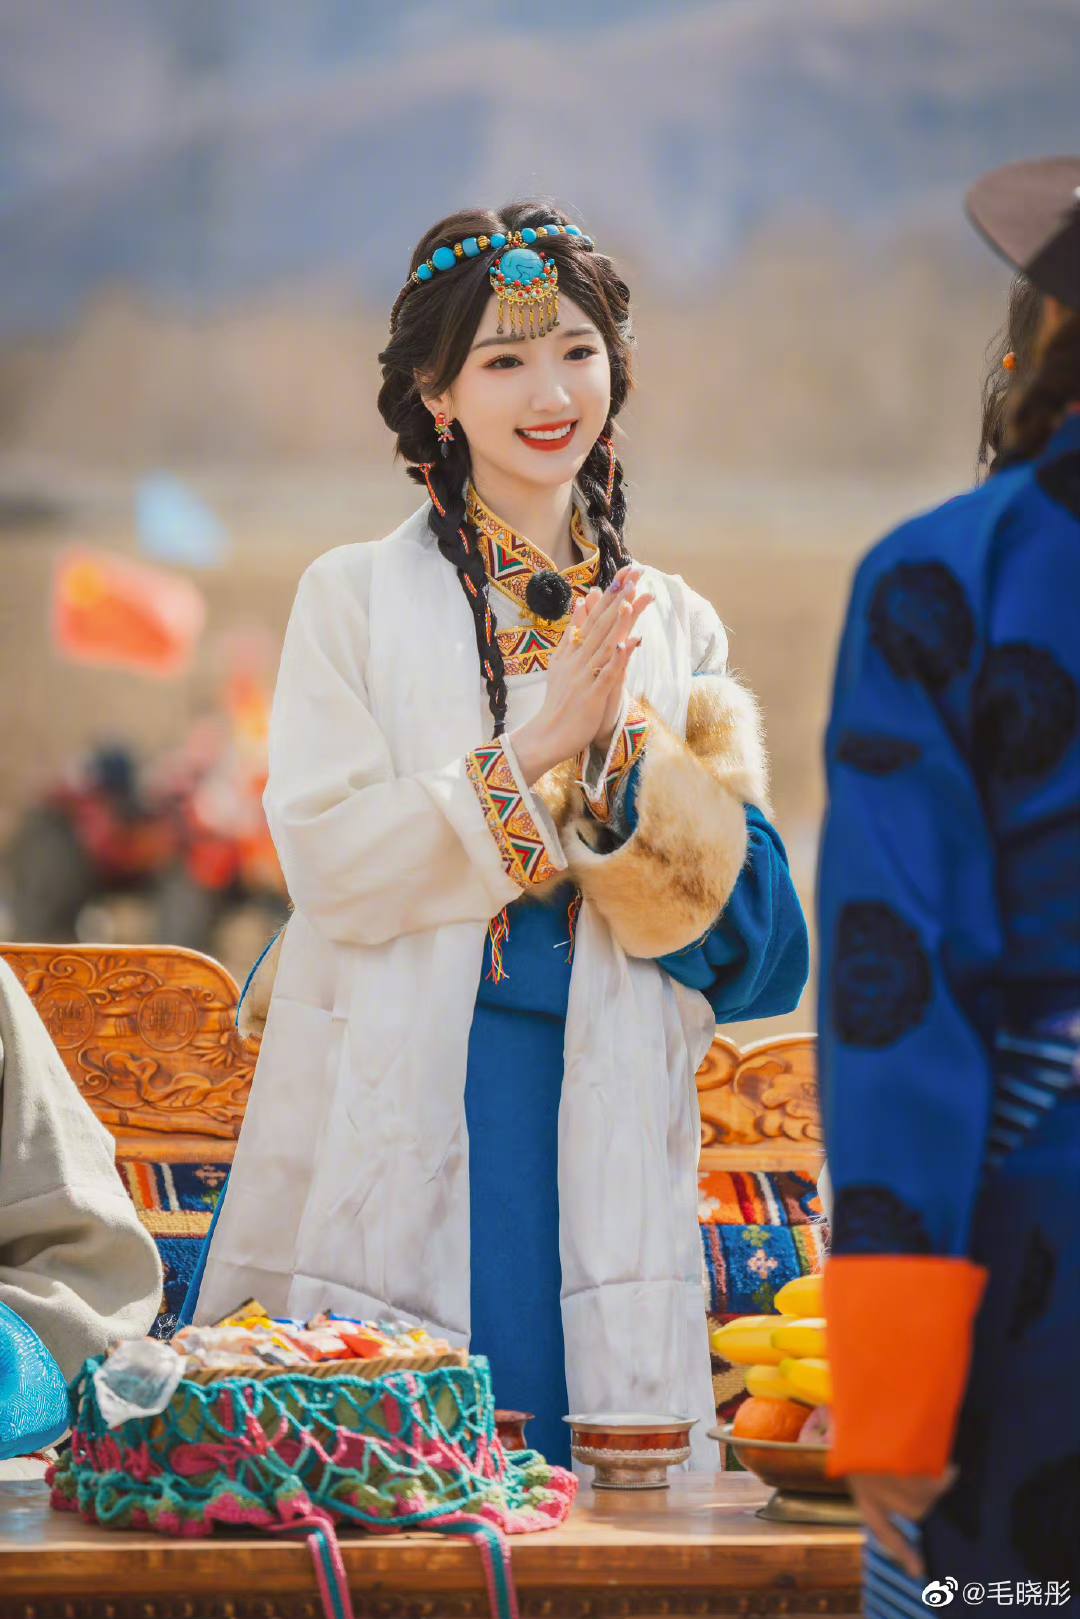 Mê mẩn trước nhan sắc ngọt ngào của Mao Hiểu Đồng khi hóa thân thành công chúa Tây Tạng - Ảnh 10